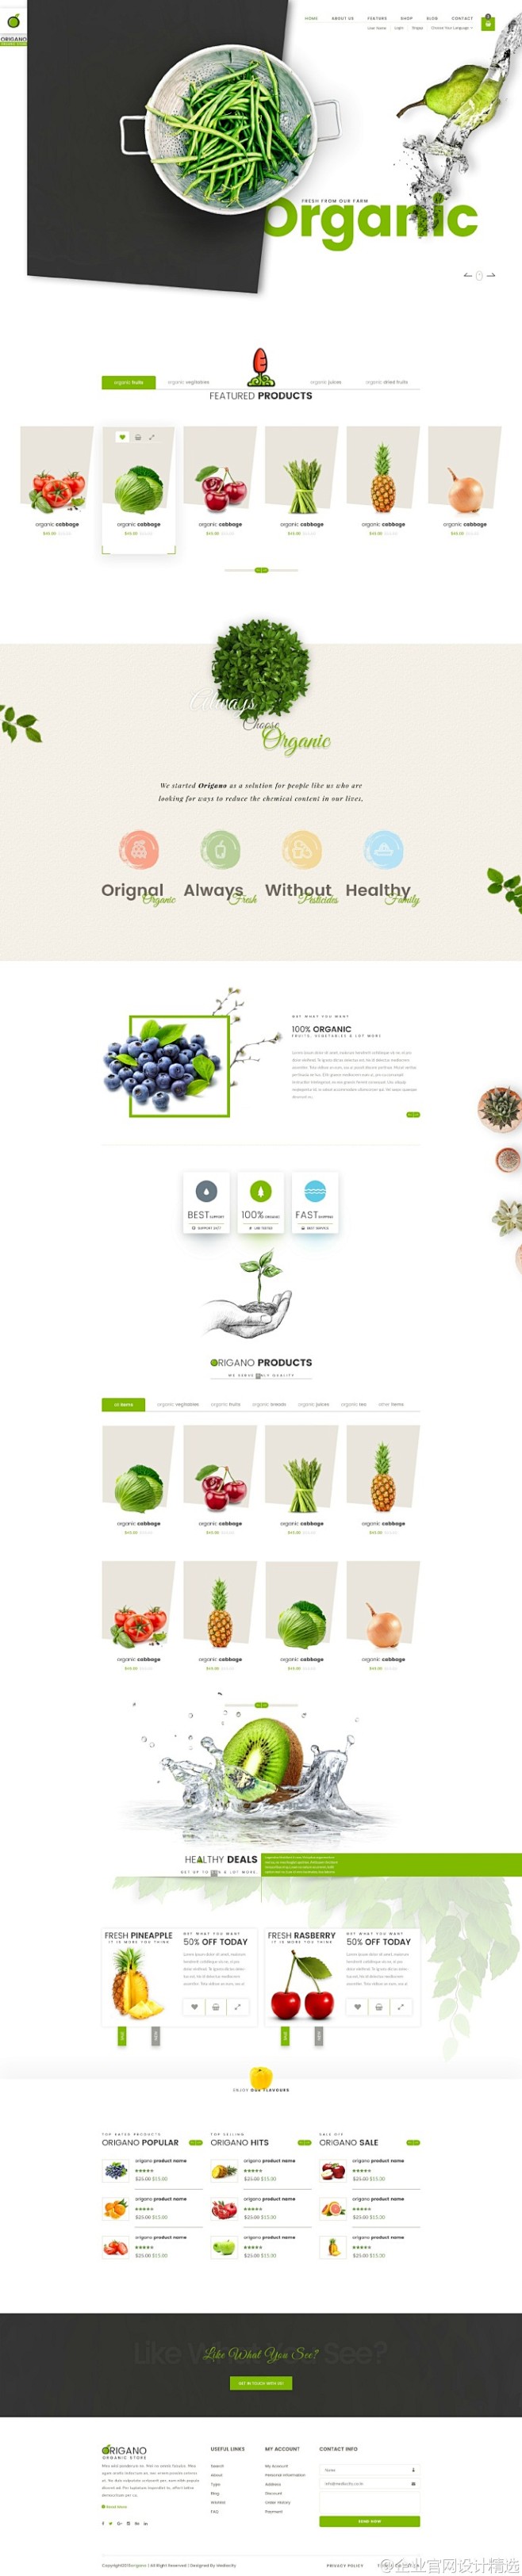 一组生鲜水果蔬菜类网上商城的网页设计参考...